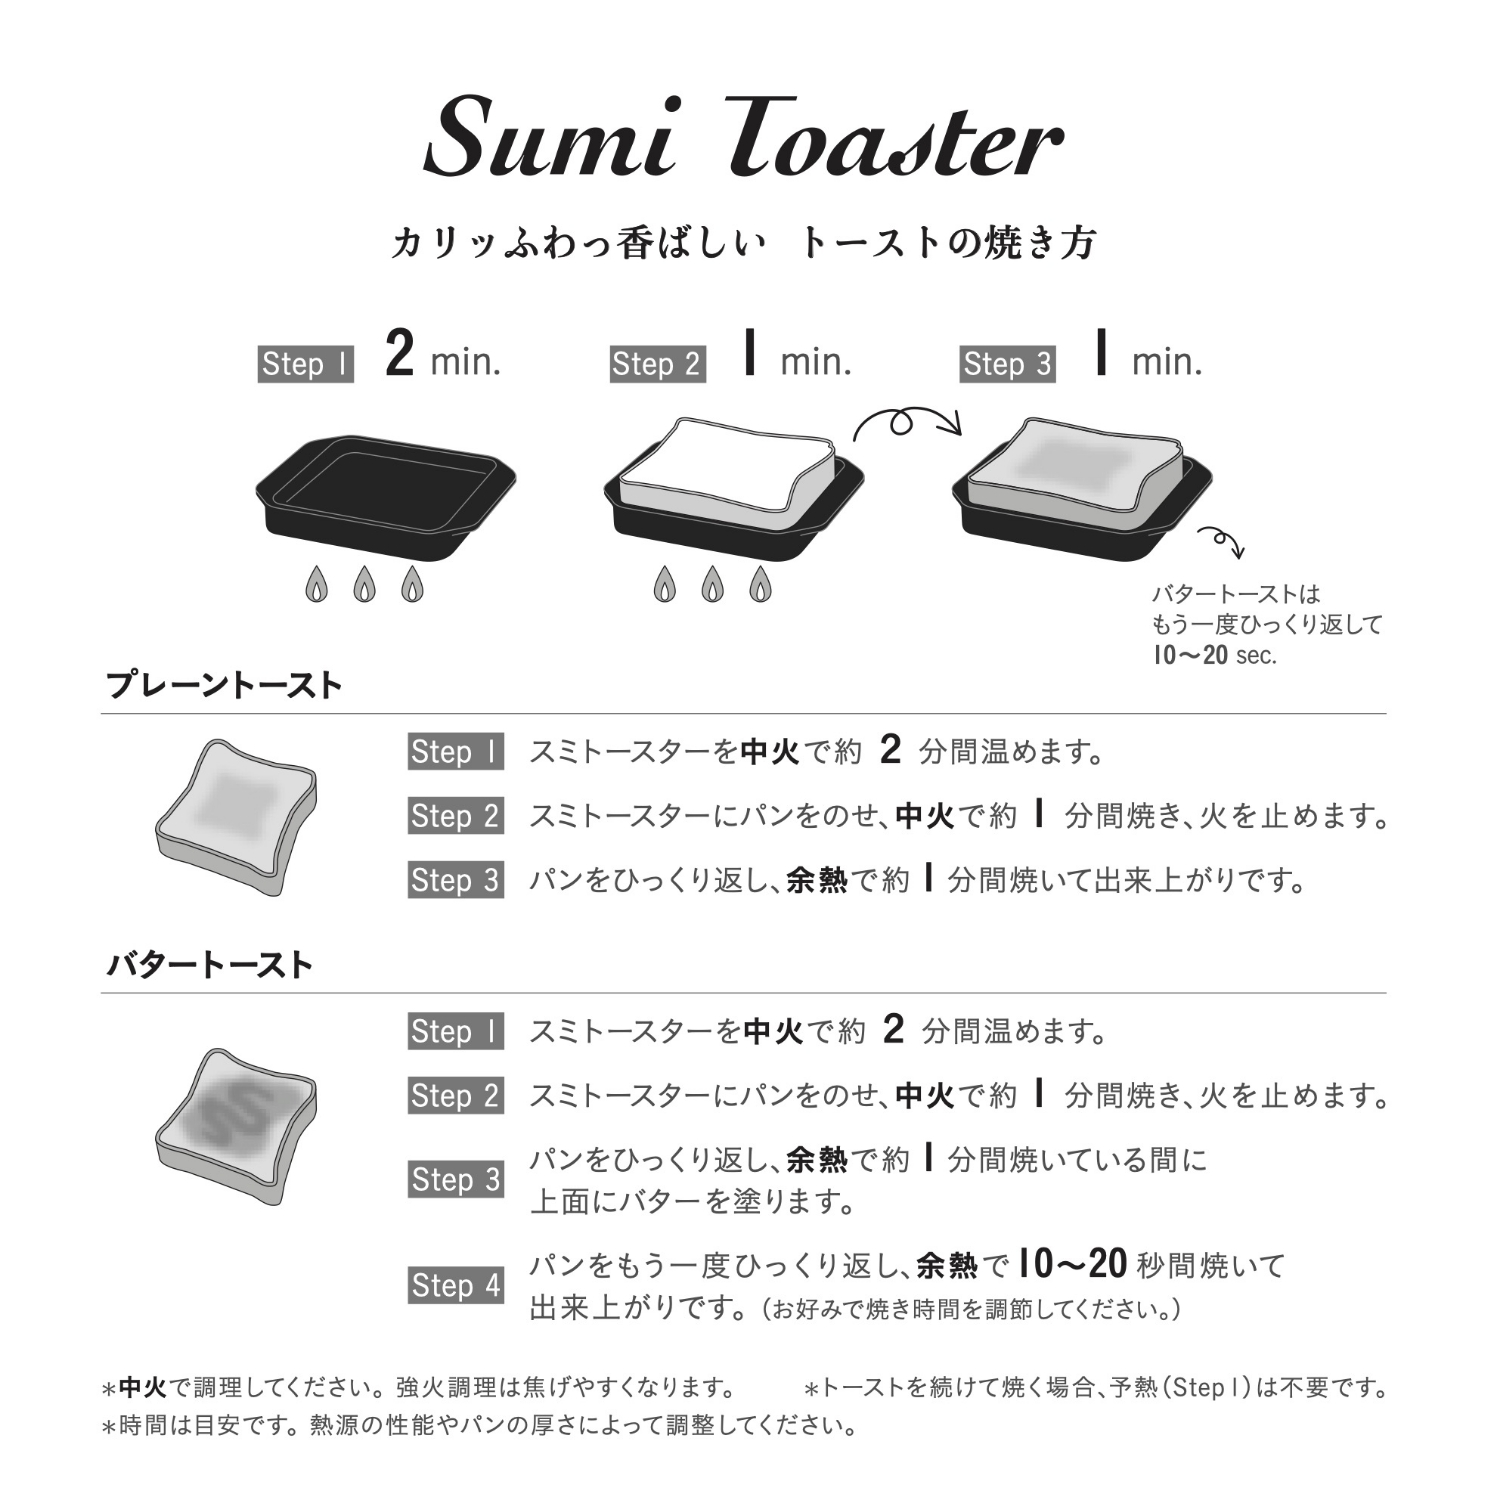 あやせものづくり研究会/Sumi Toaster L -炭の力で水分を逃さない ...